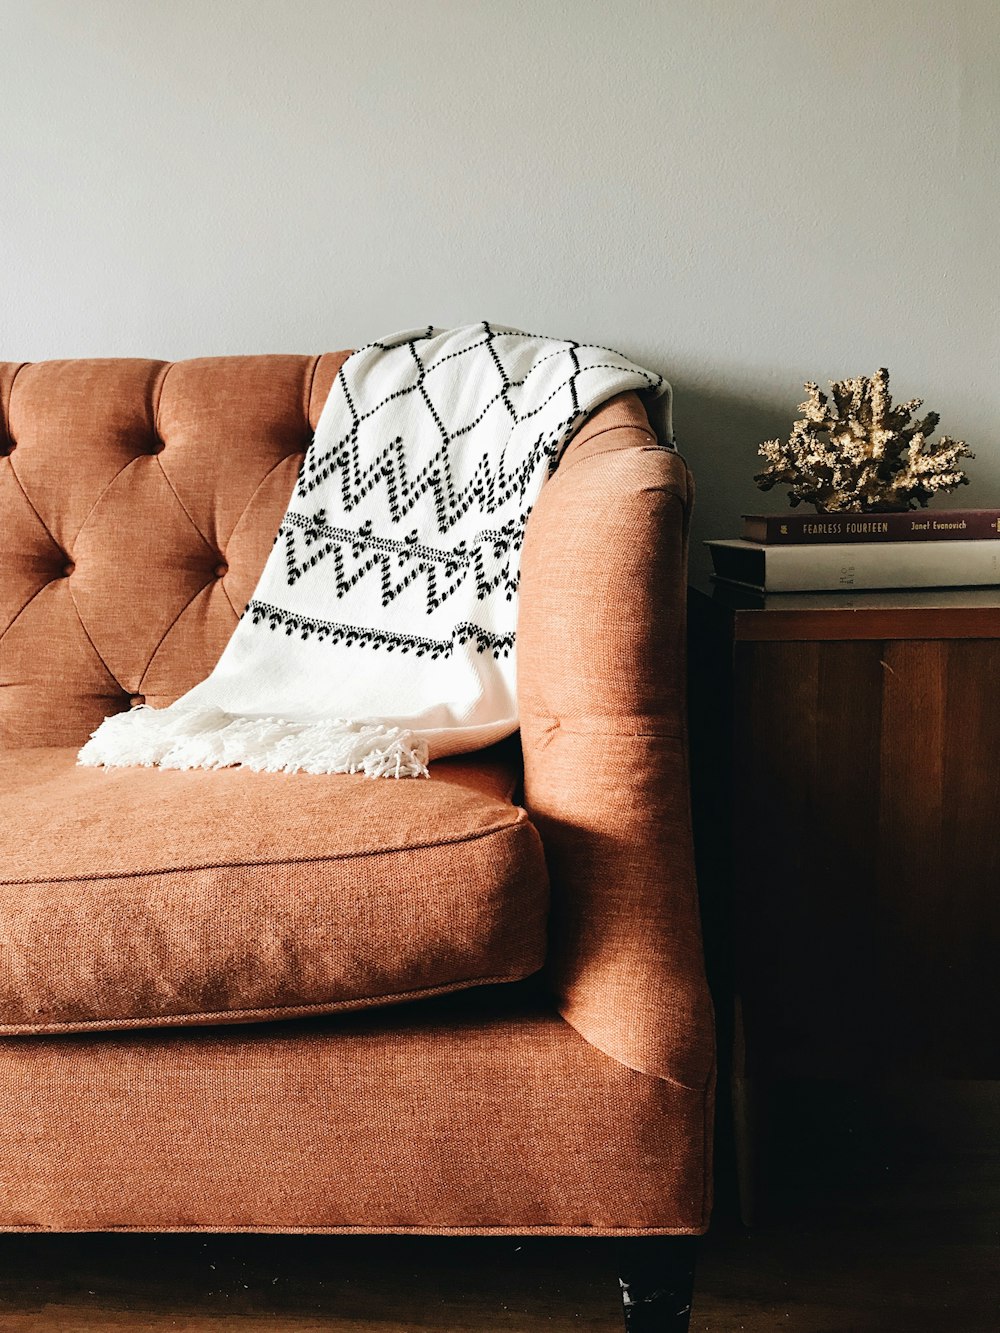 textil blanco y negro sobre sofá marrón